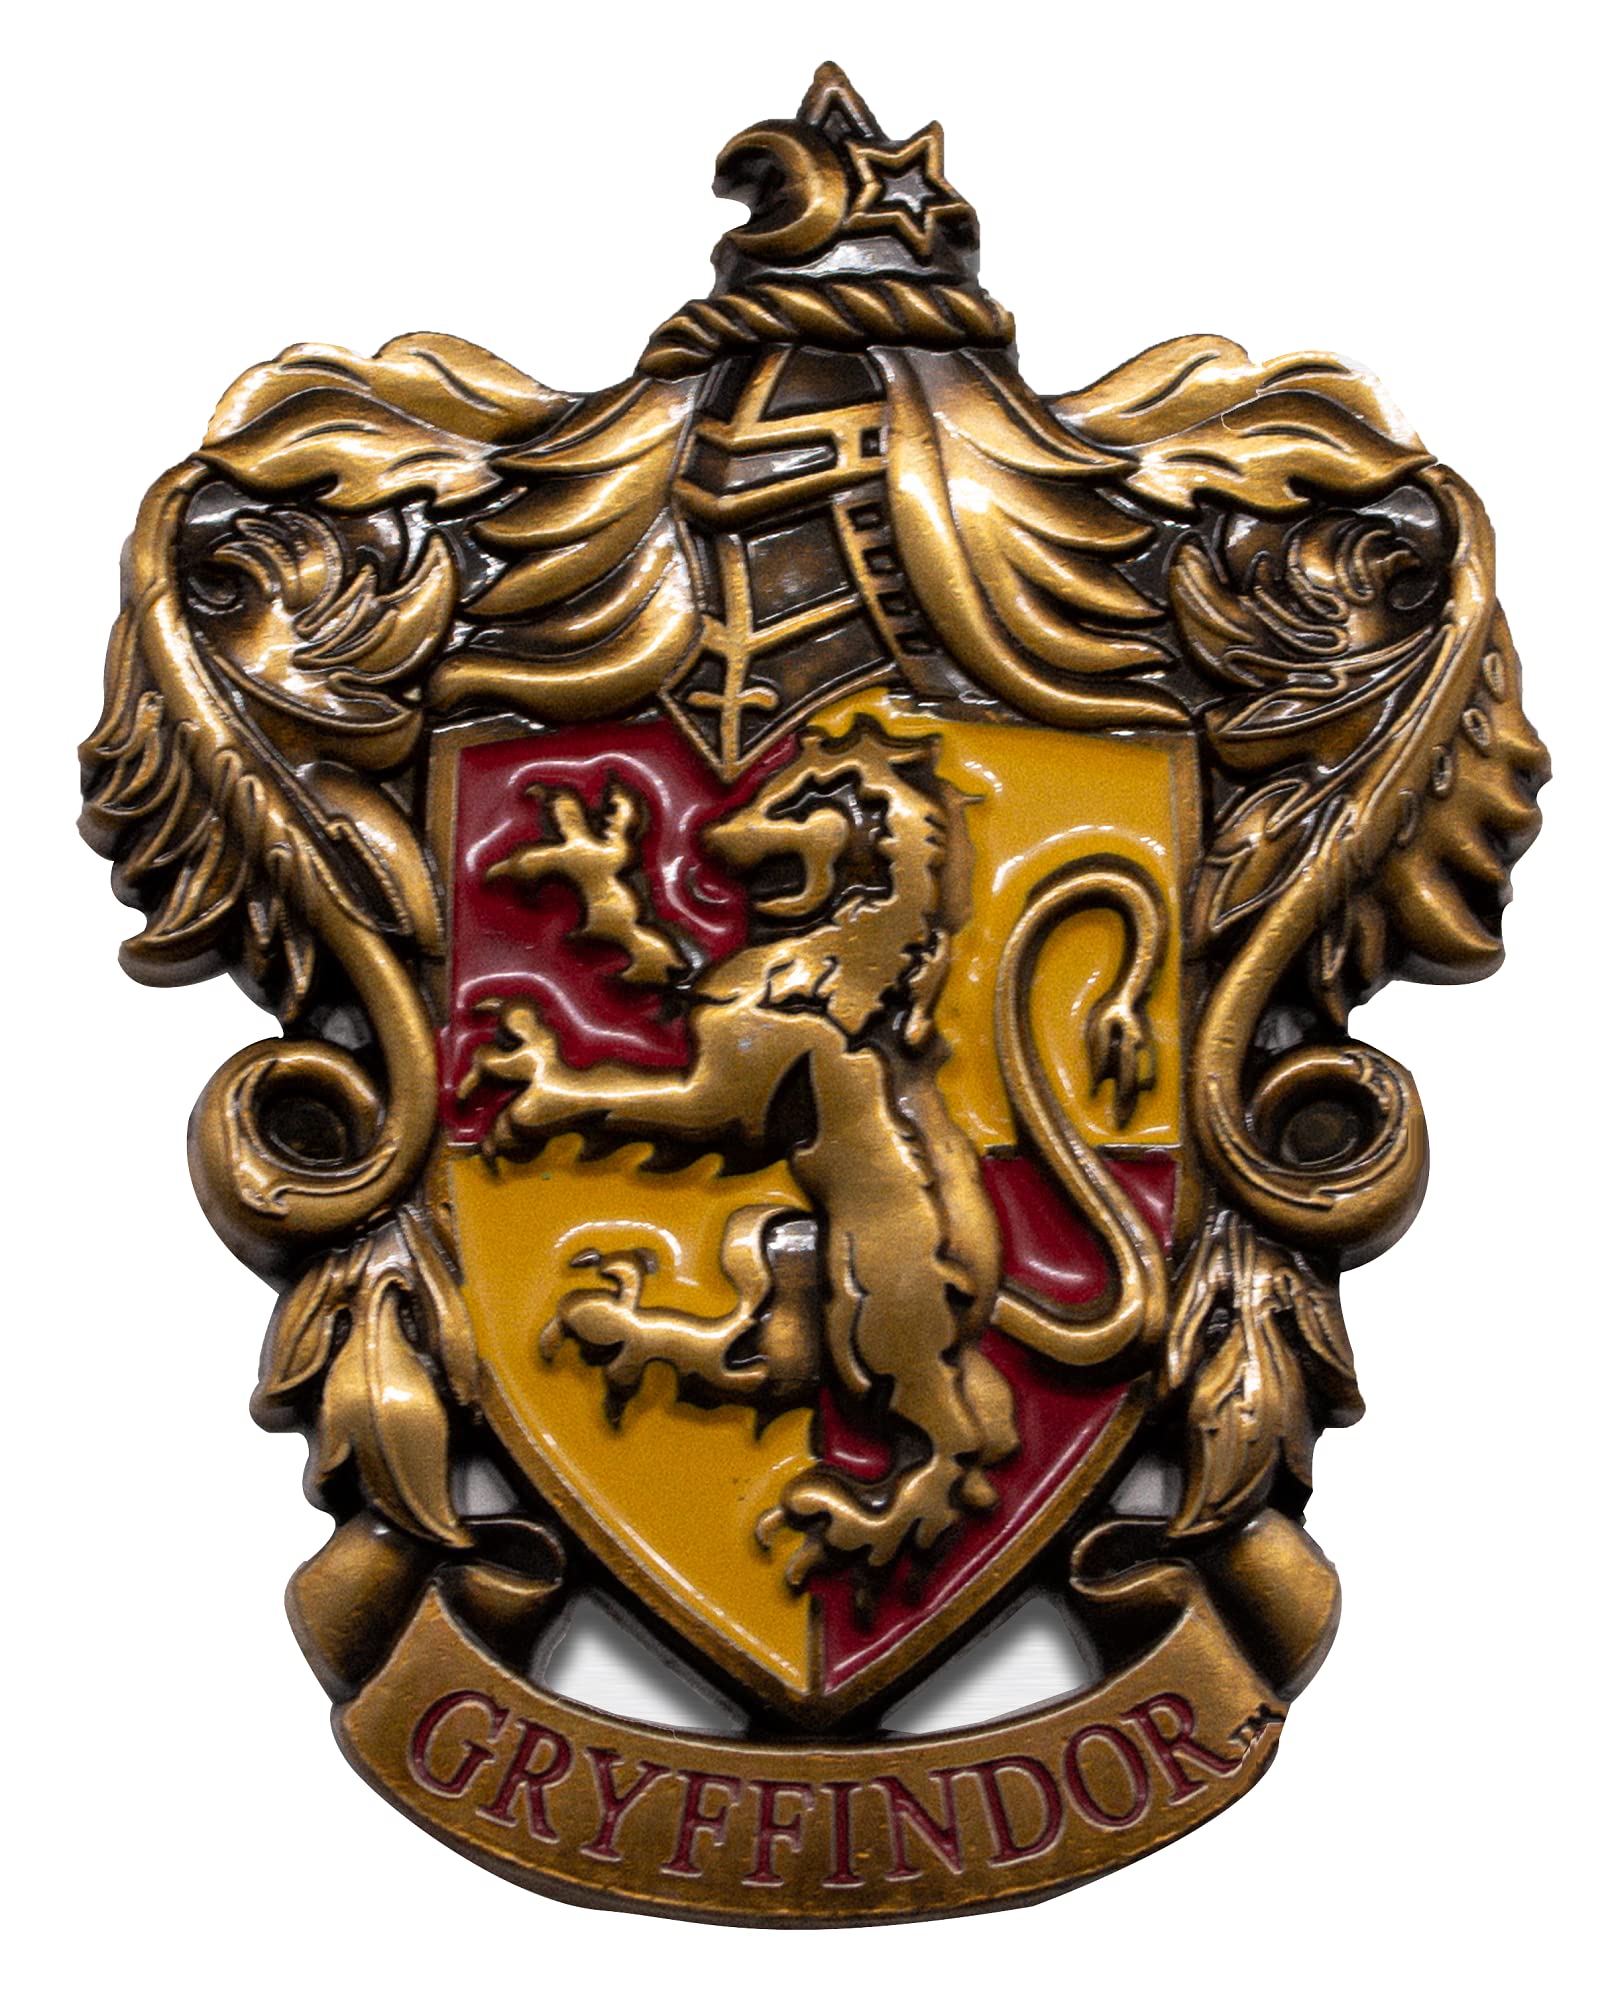 Licensed Harry Potter Gryffindor metal Fridge Magnet enammeled 3D for lockers, metal surfaces